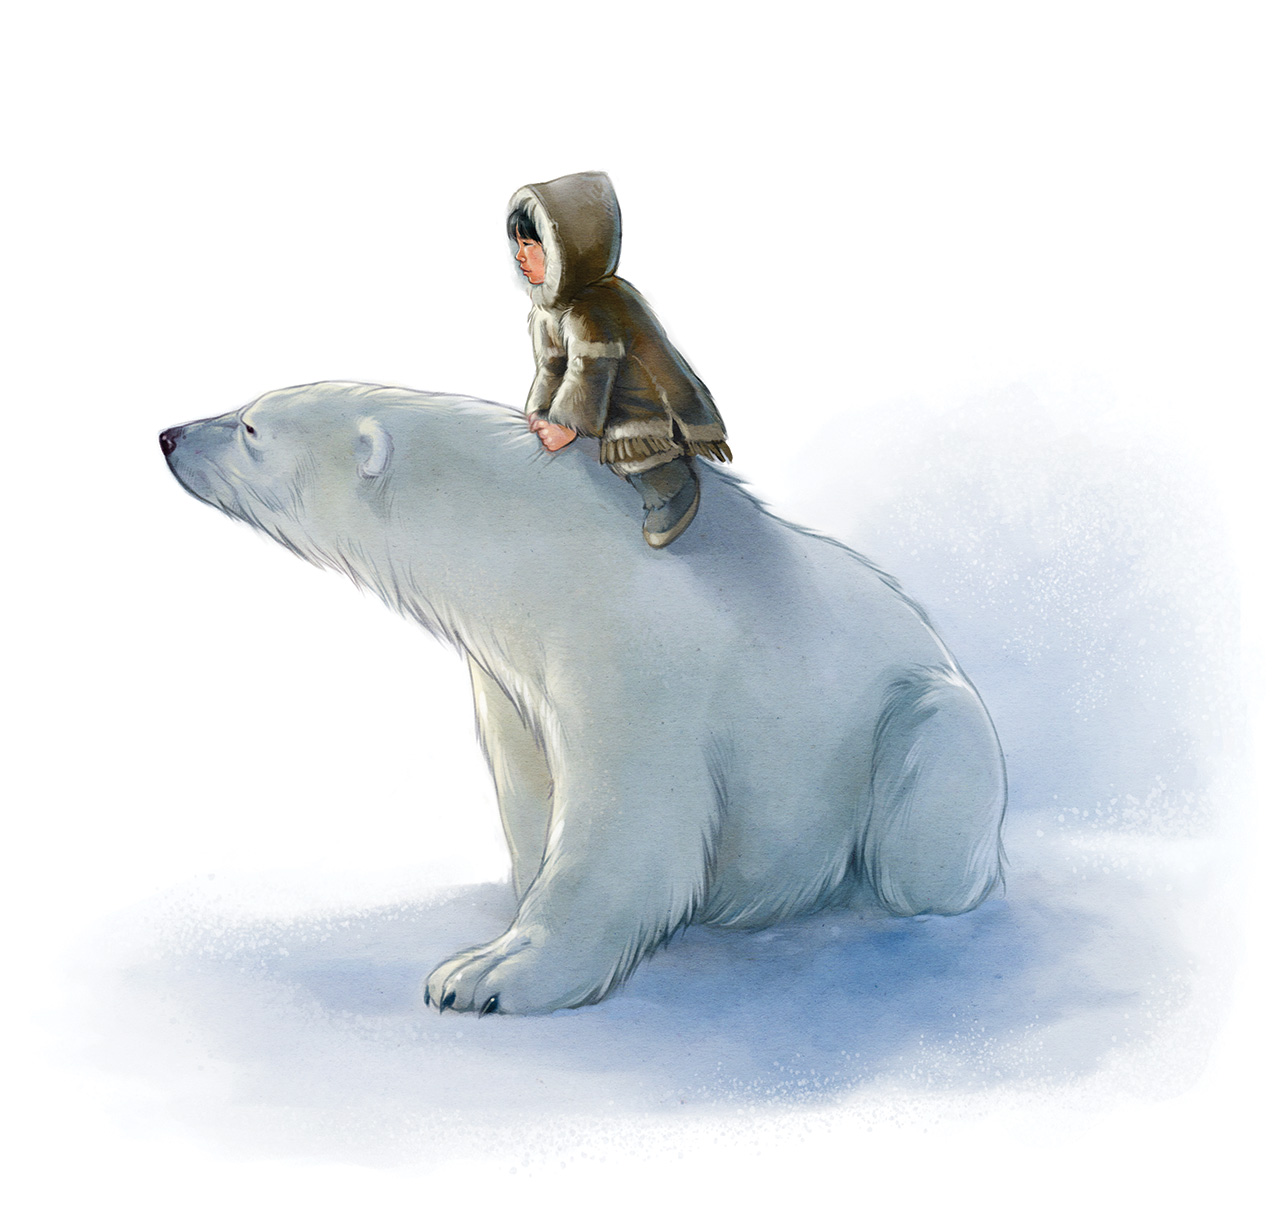 Orphan and the Polar Bear